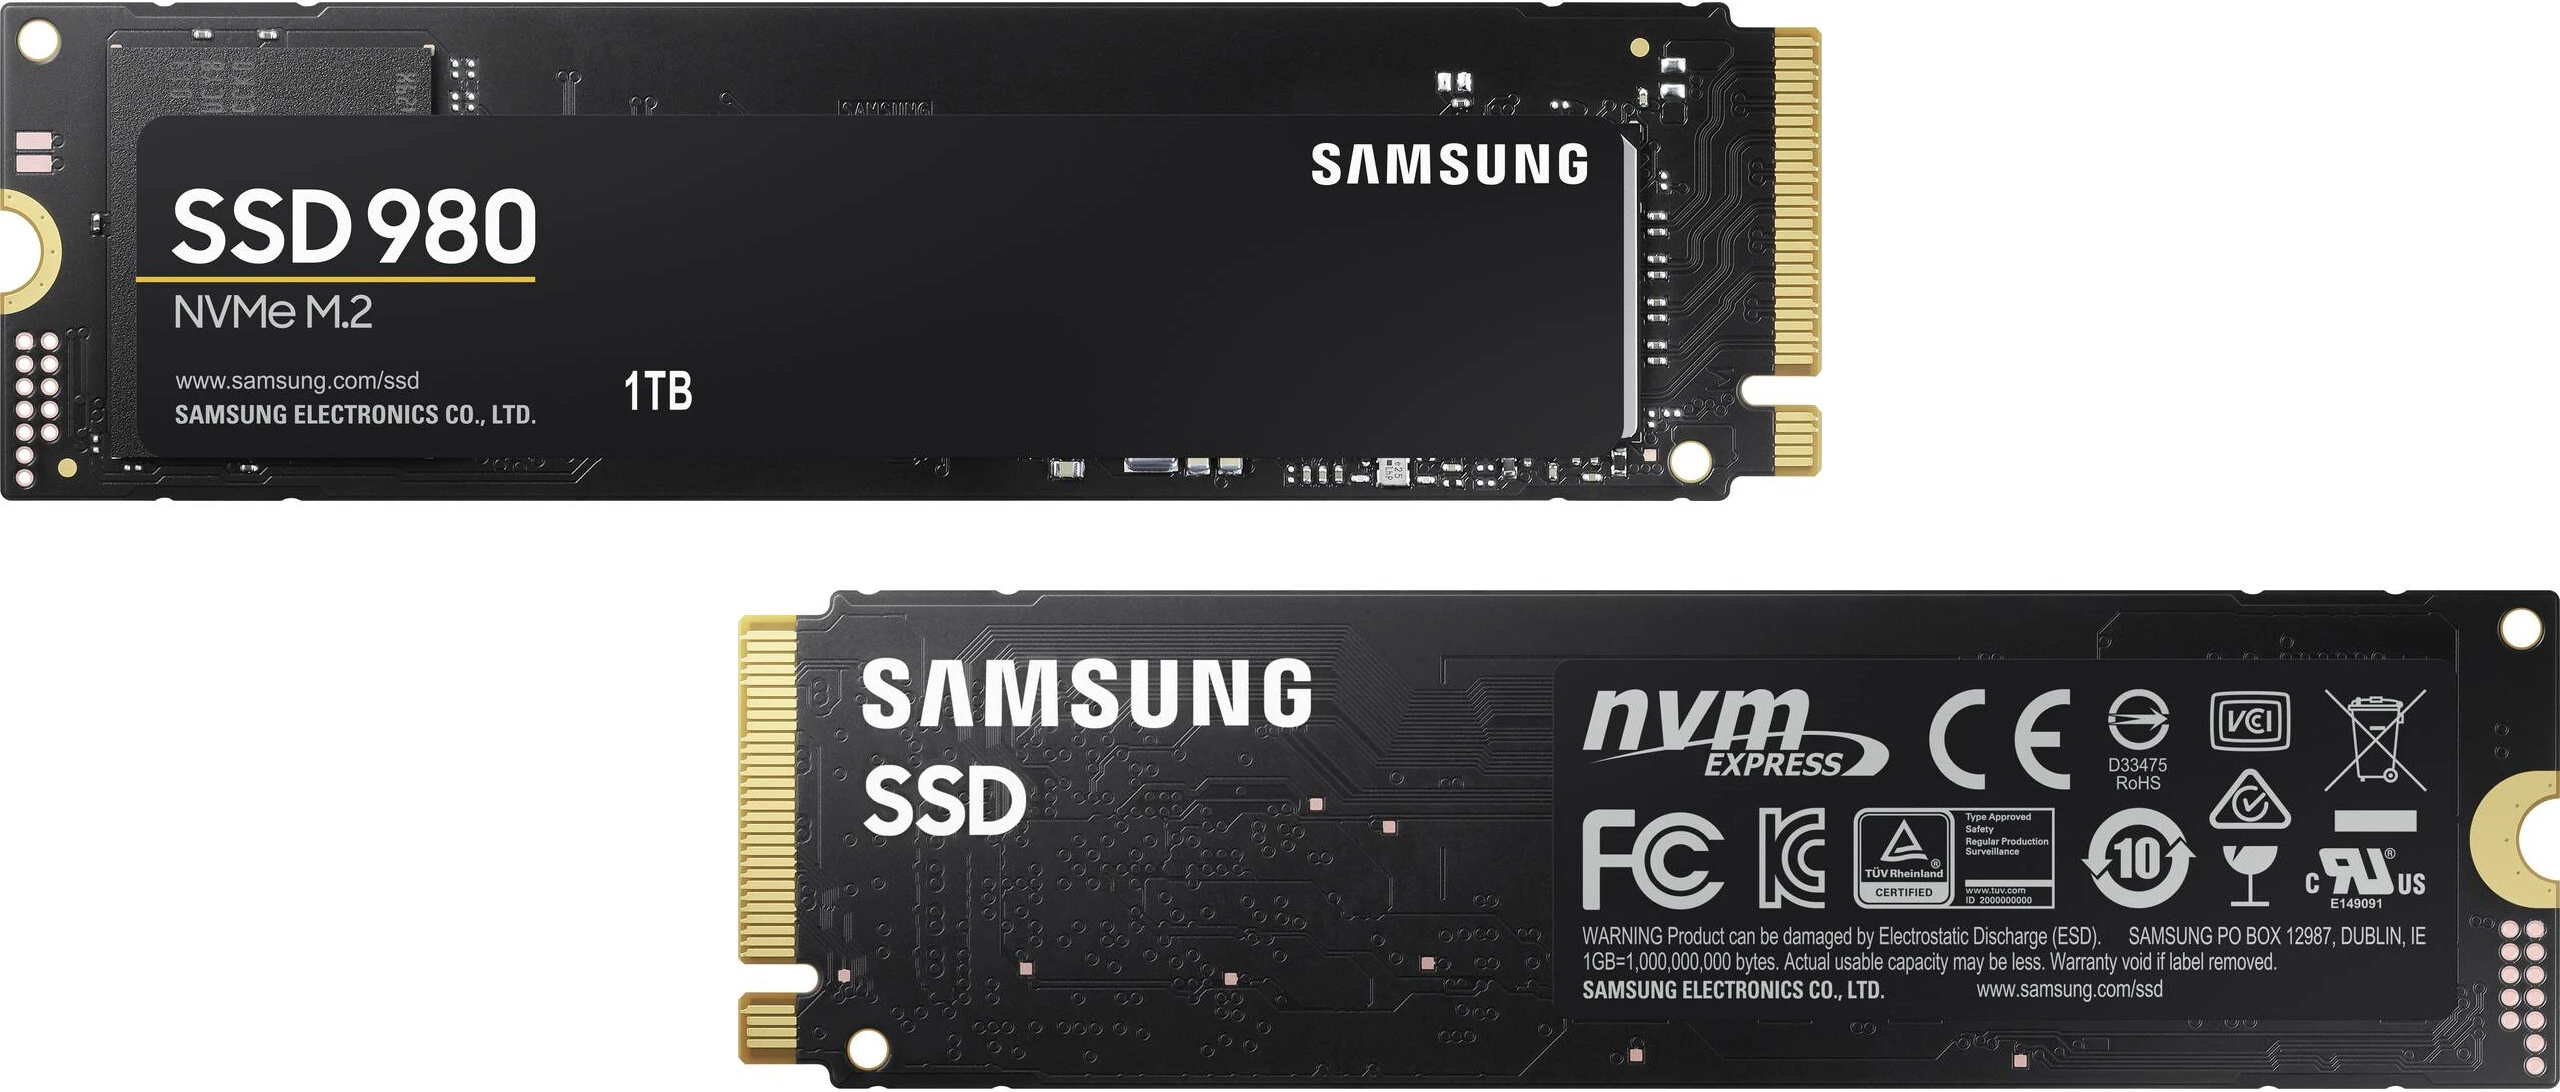 Les SSD Samsung 980 manquent de DRAM et de PCIe 4.0